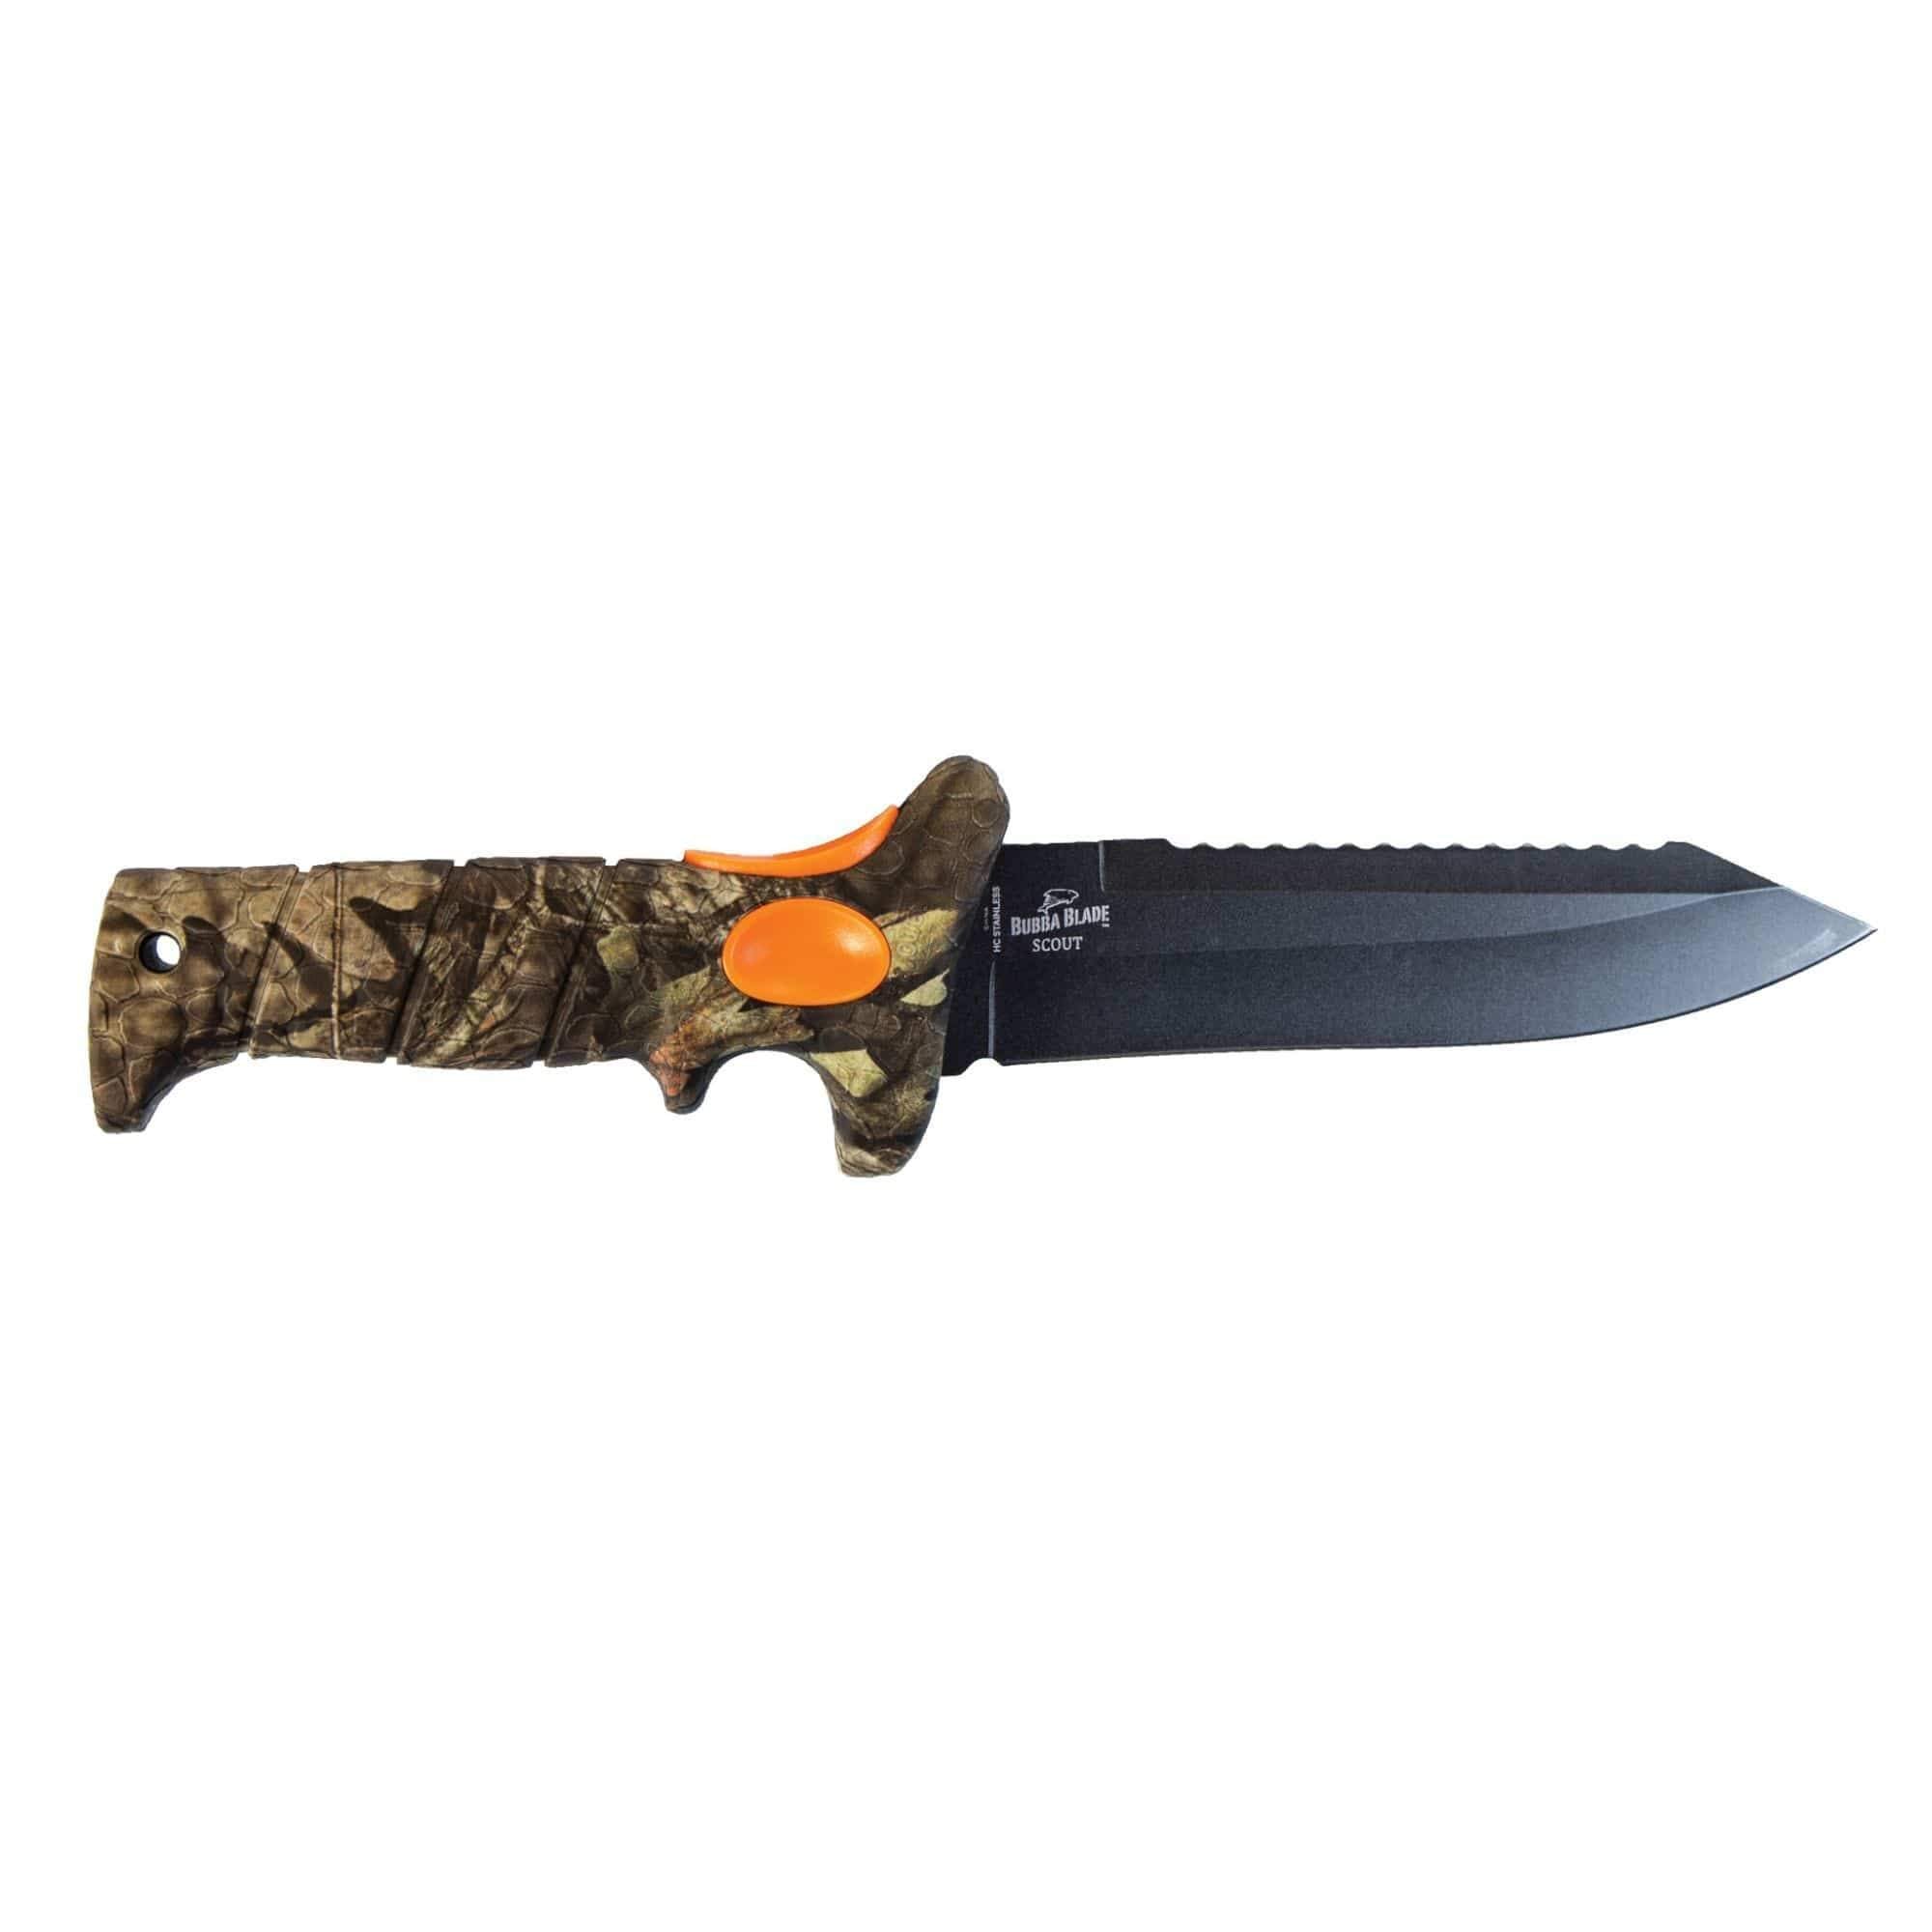 Bubba Blade 6 Scout Knife, Mossy Oak